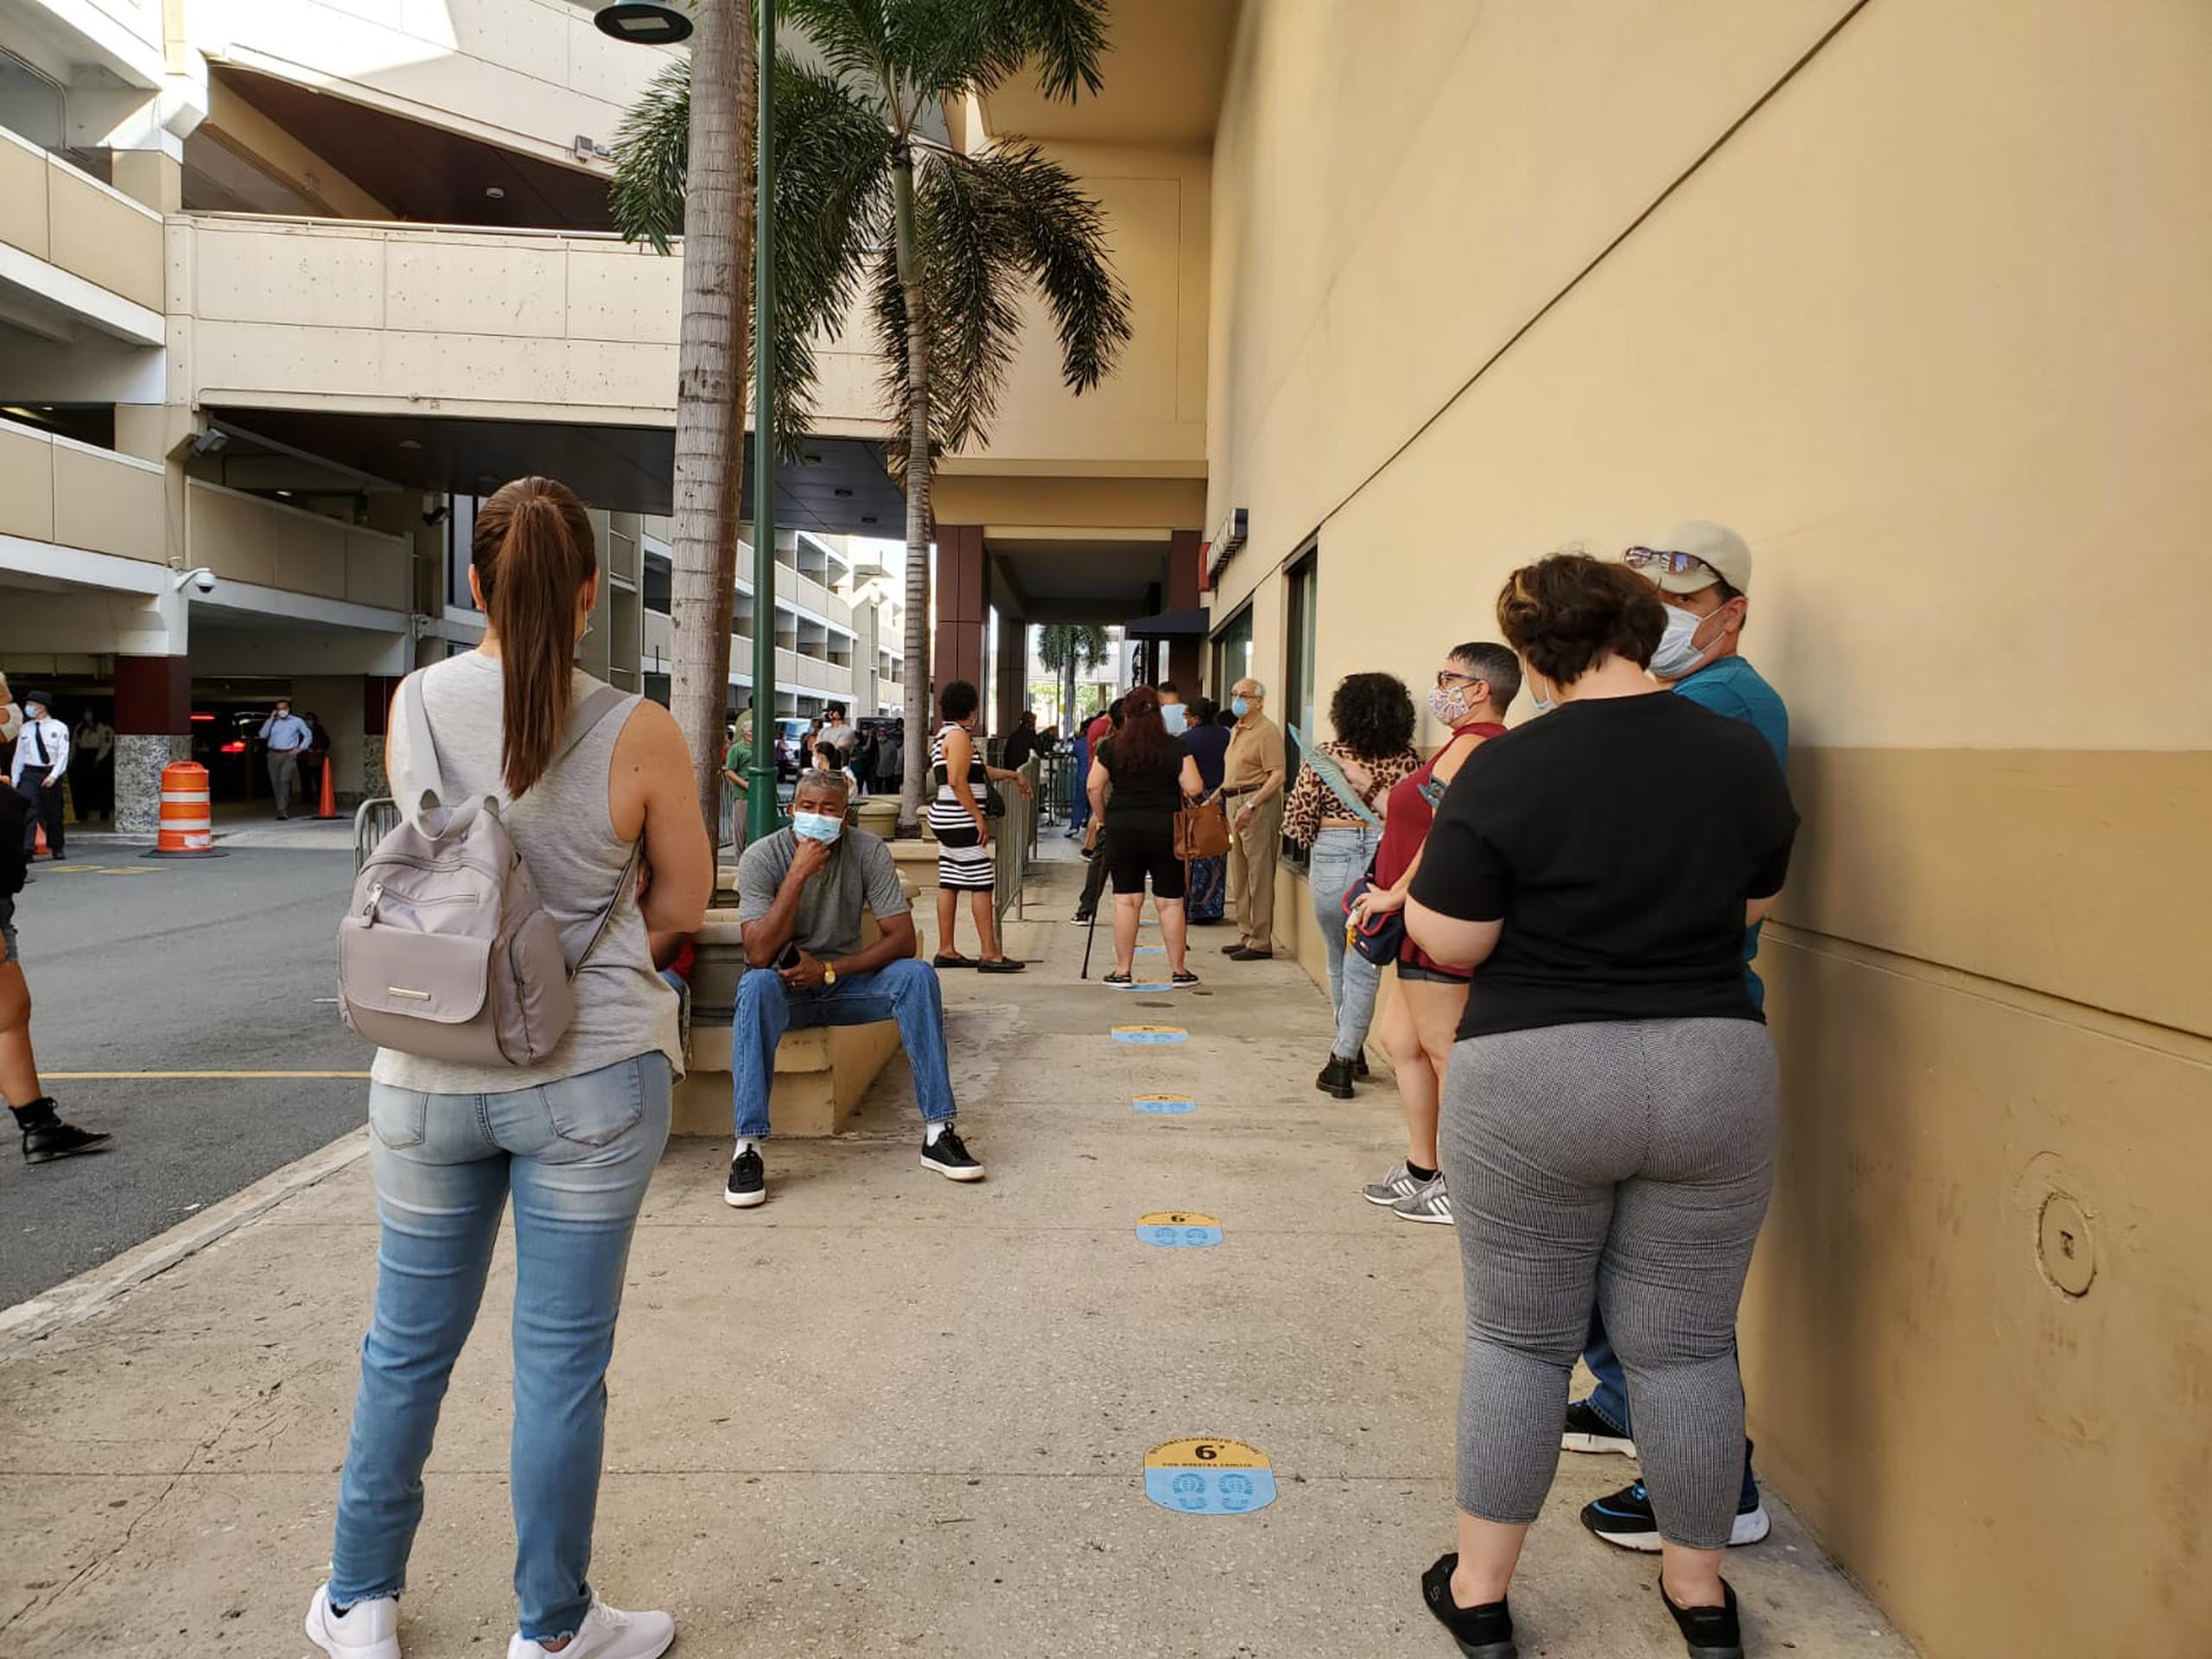 Ciudadanos esperaron con paciencia su turno para entrar al centro comercial.